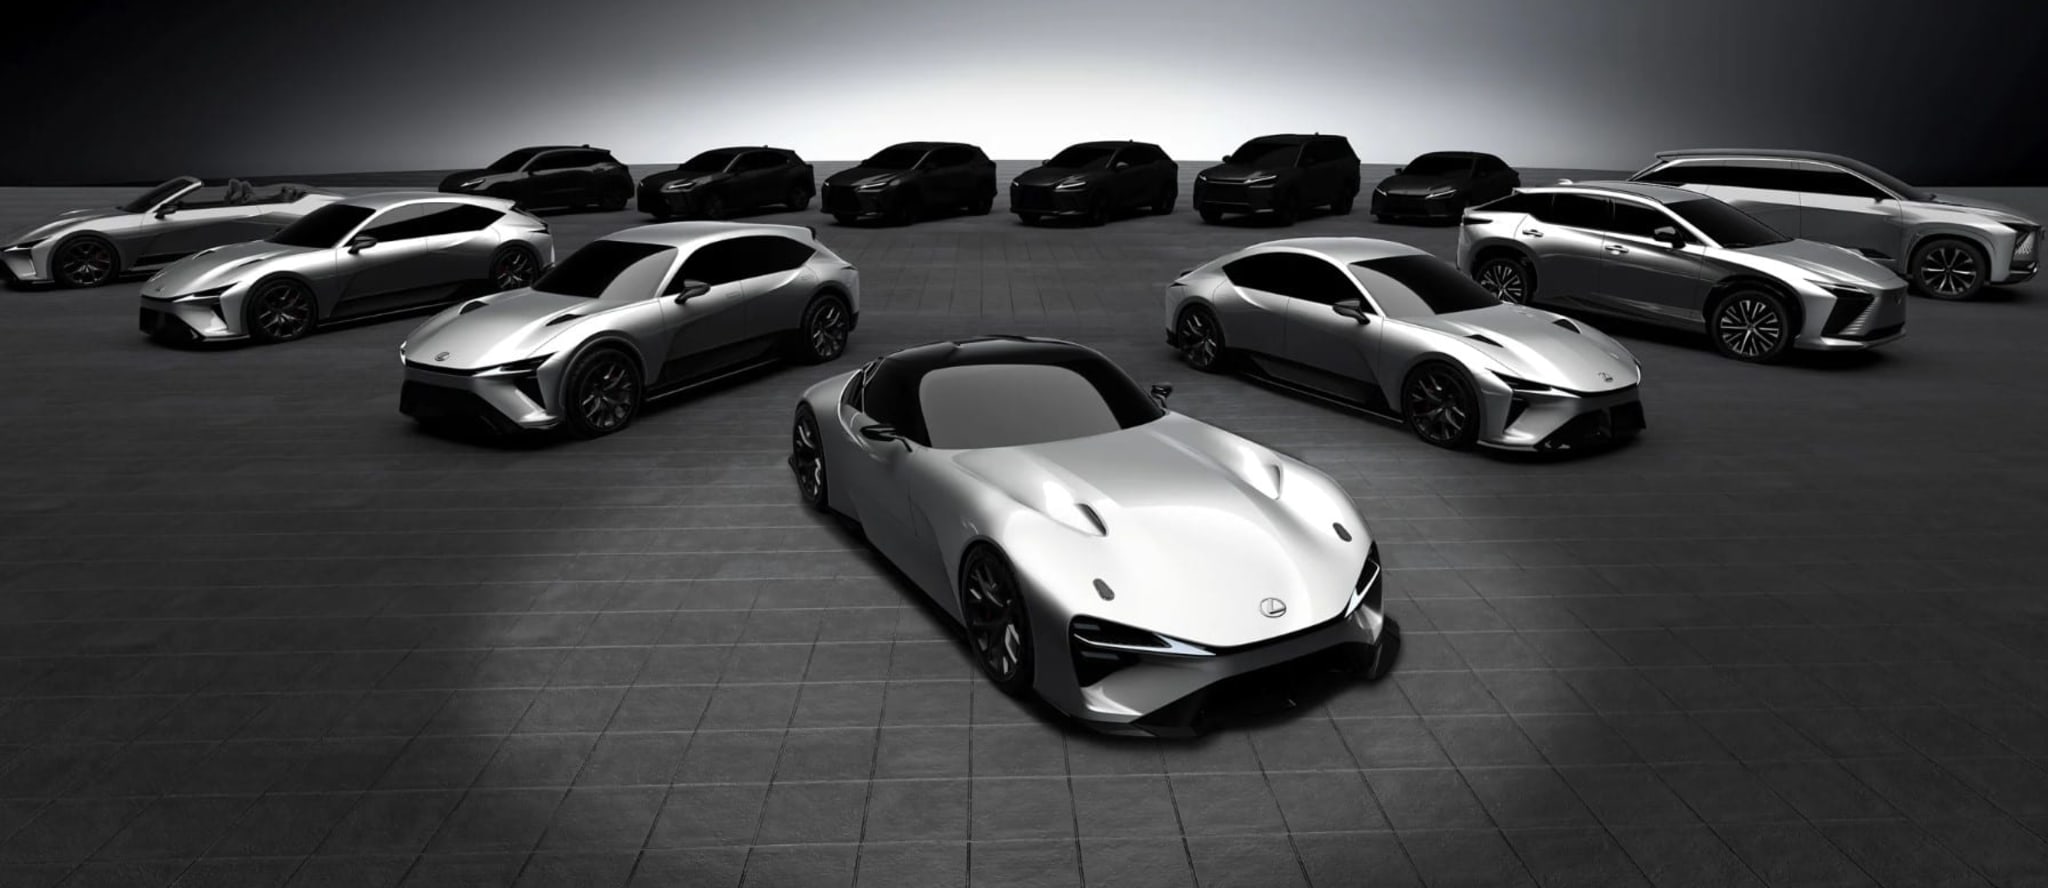 雷克萨斯为其全电动未来展示了新的电动汽车概念